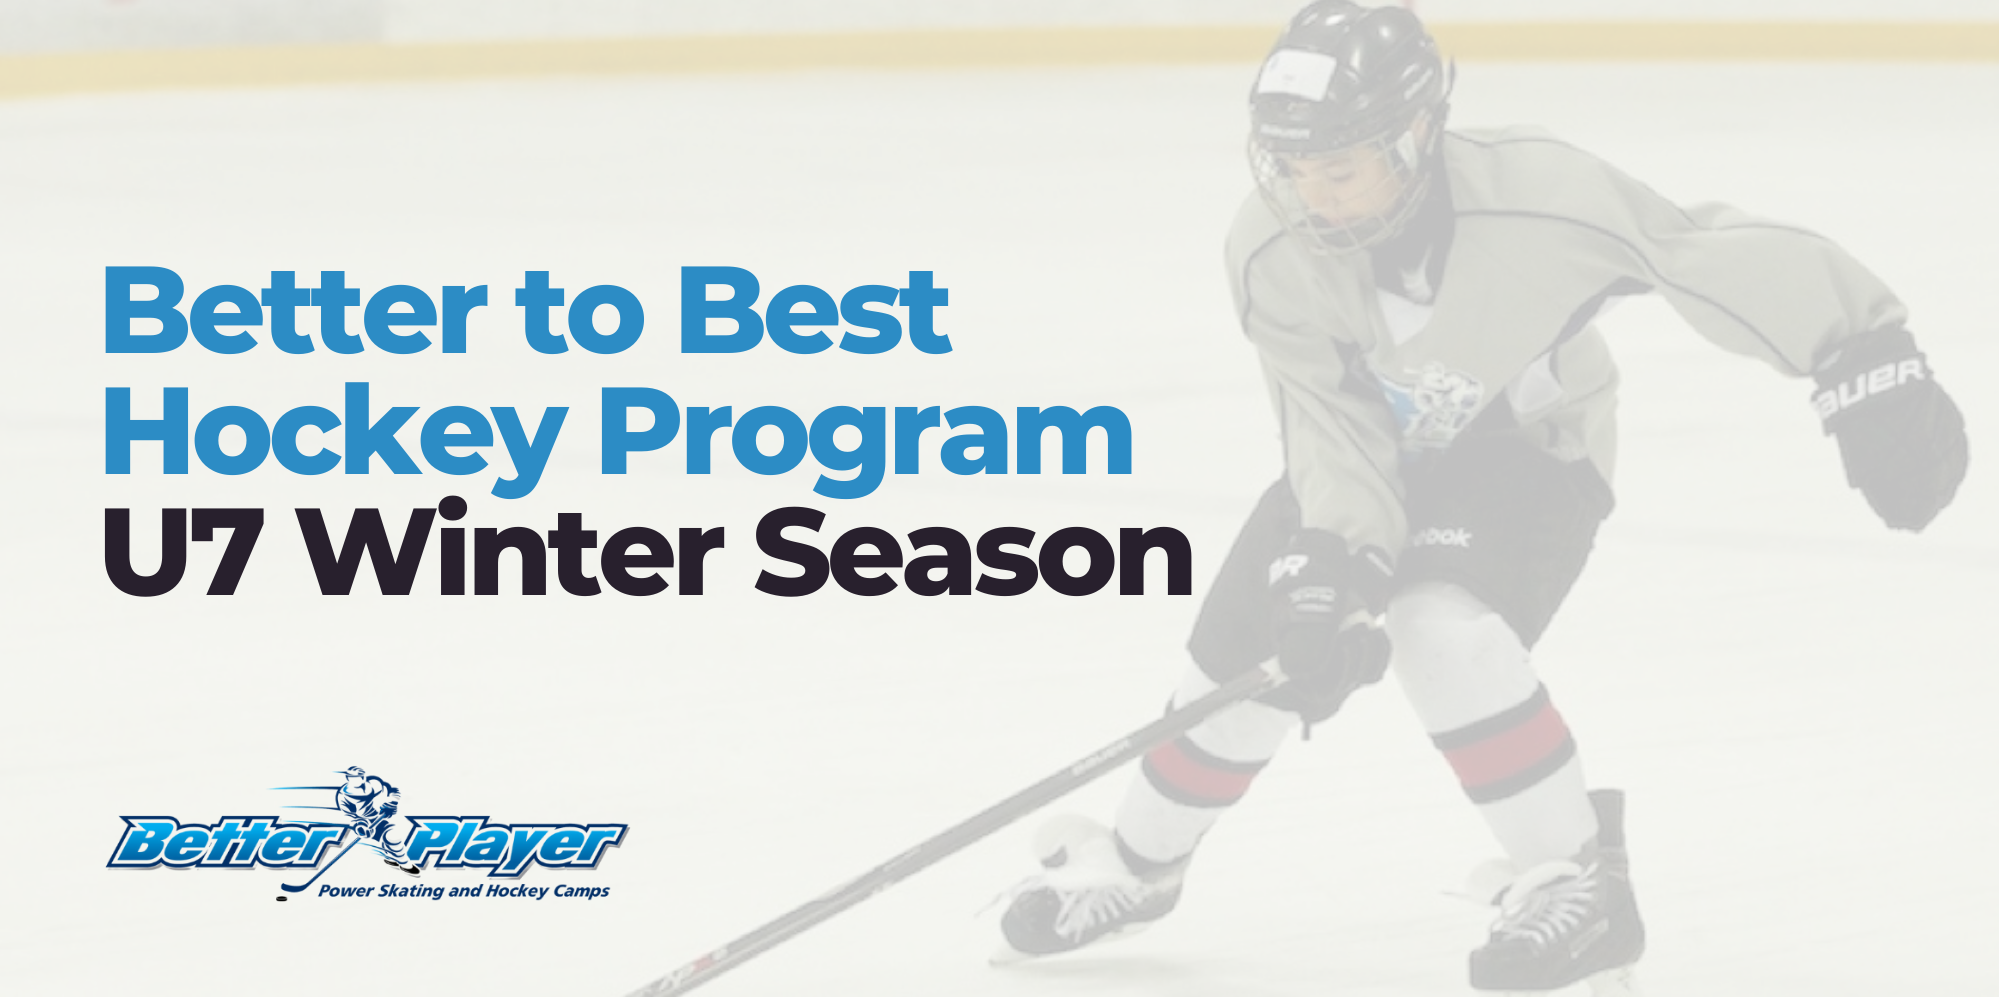 U7 Winter Season | Better to Best Hockey Program